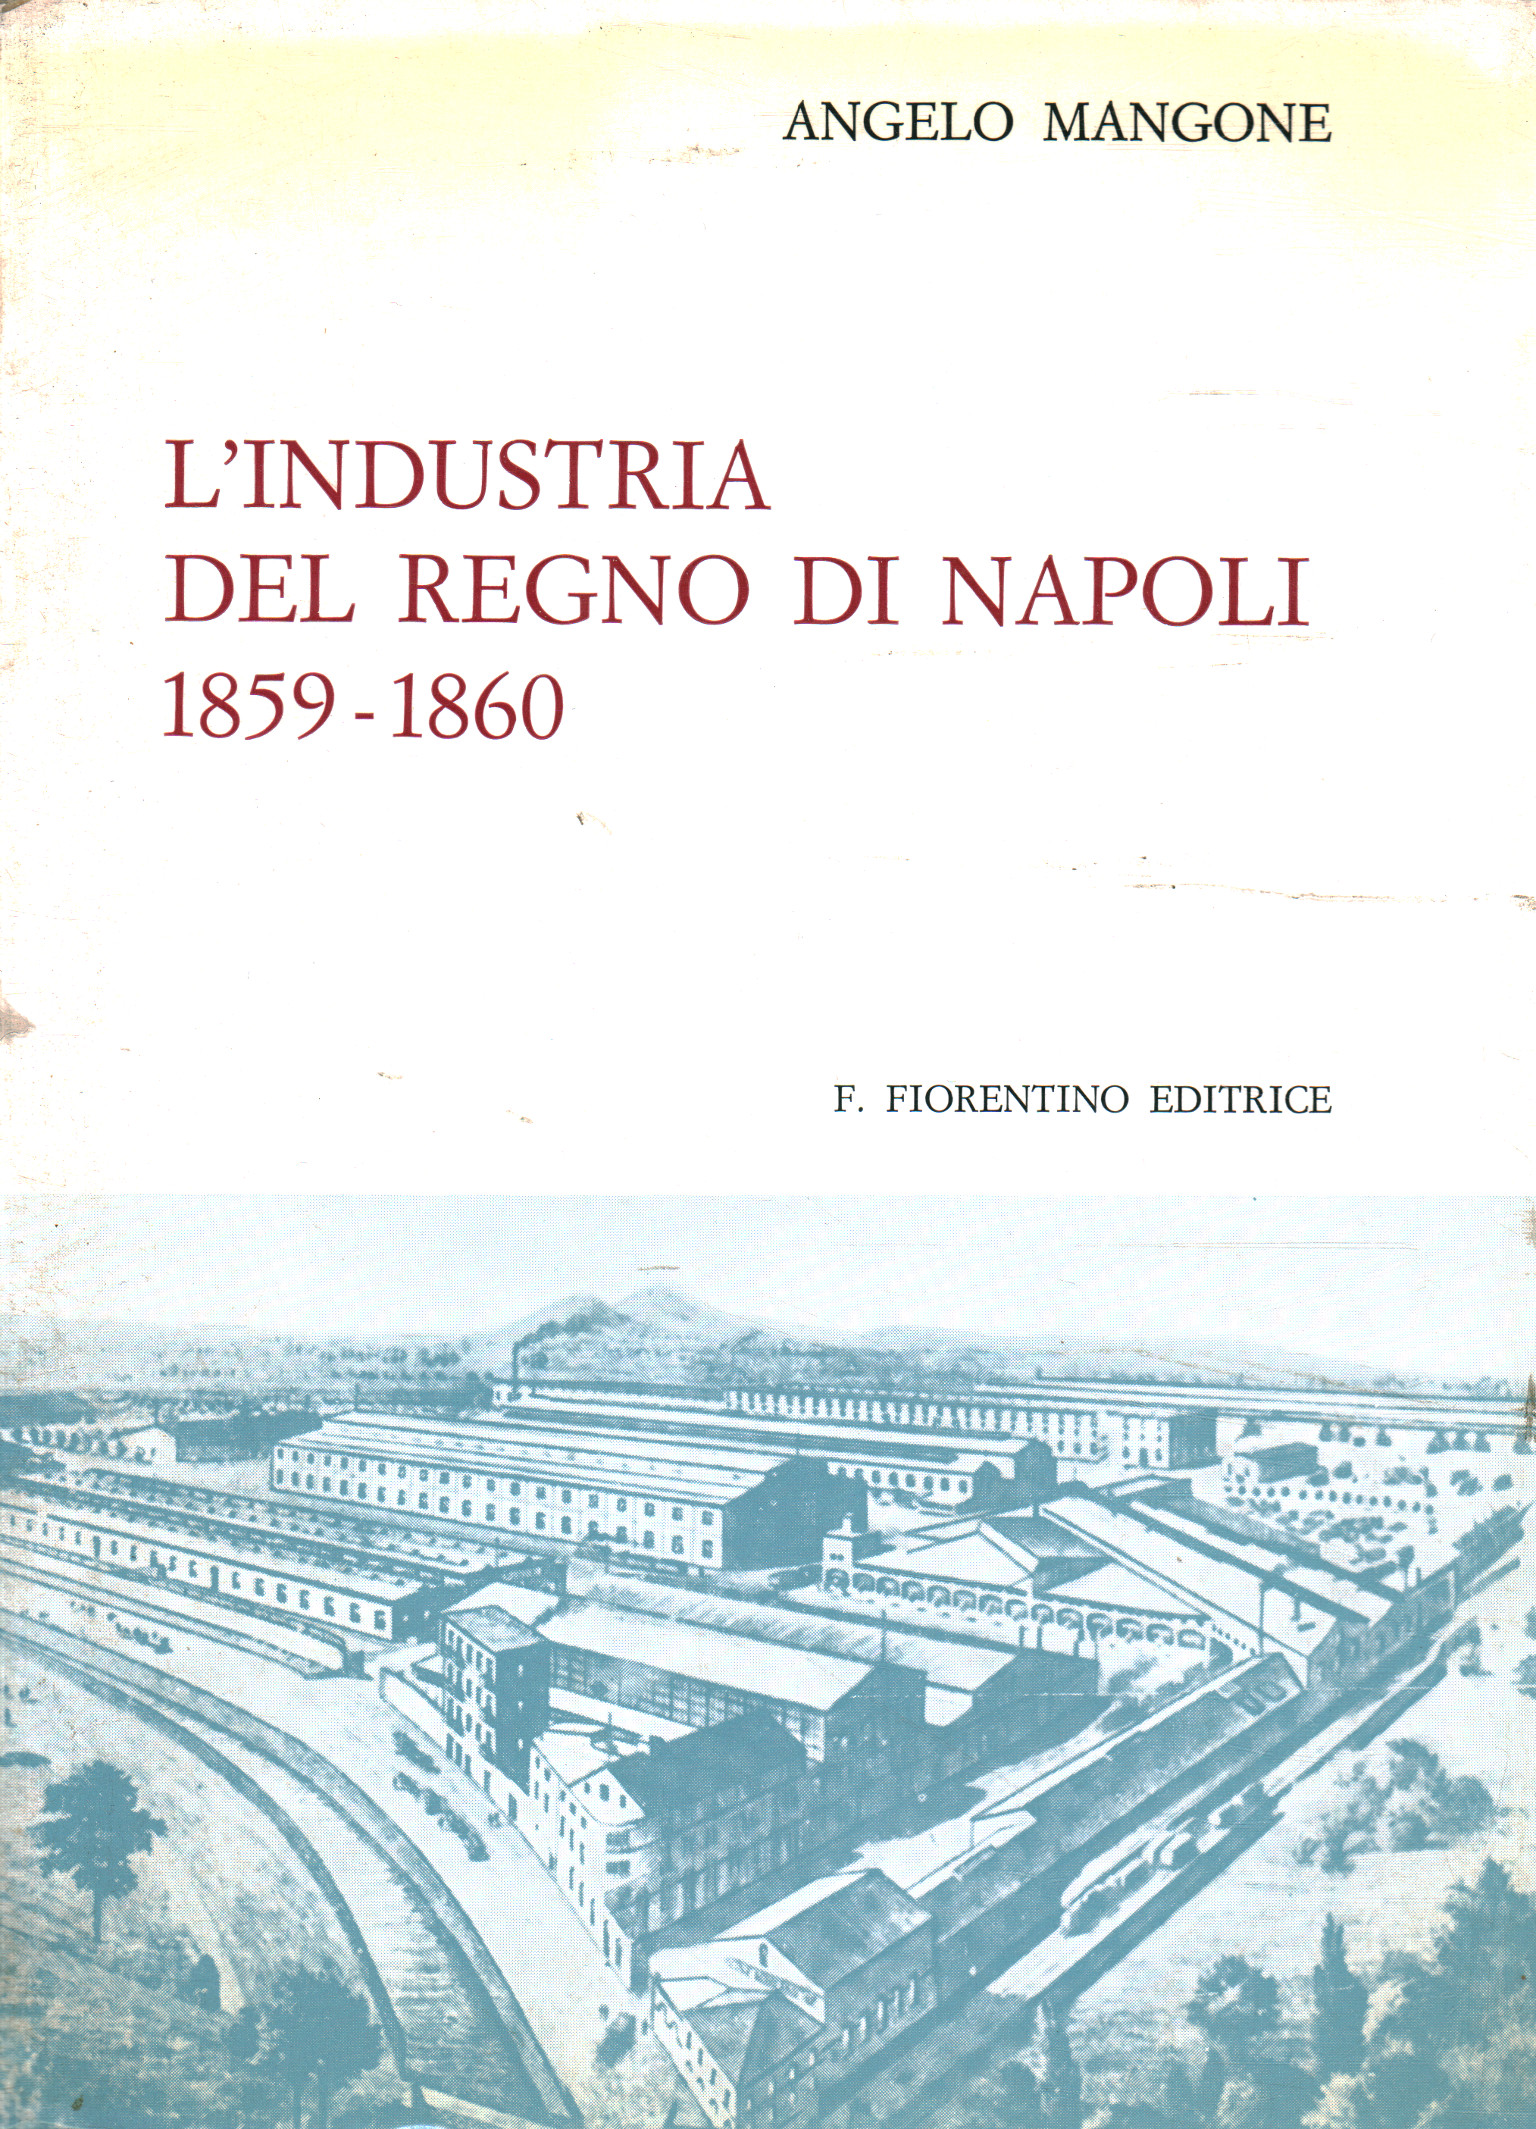 L'industria del Regno di Napoli 1859 - 1860, Angelo Mangone